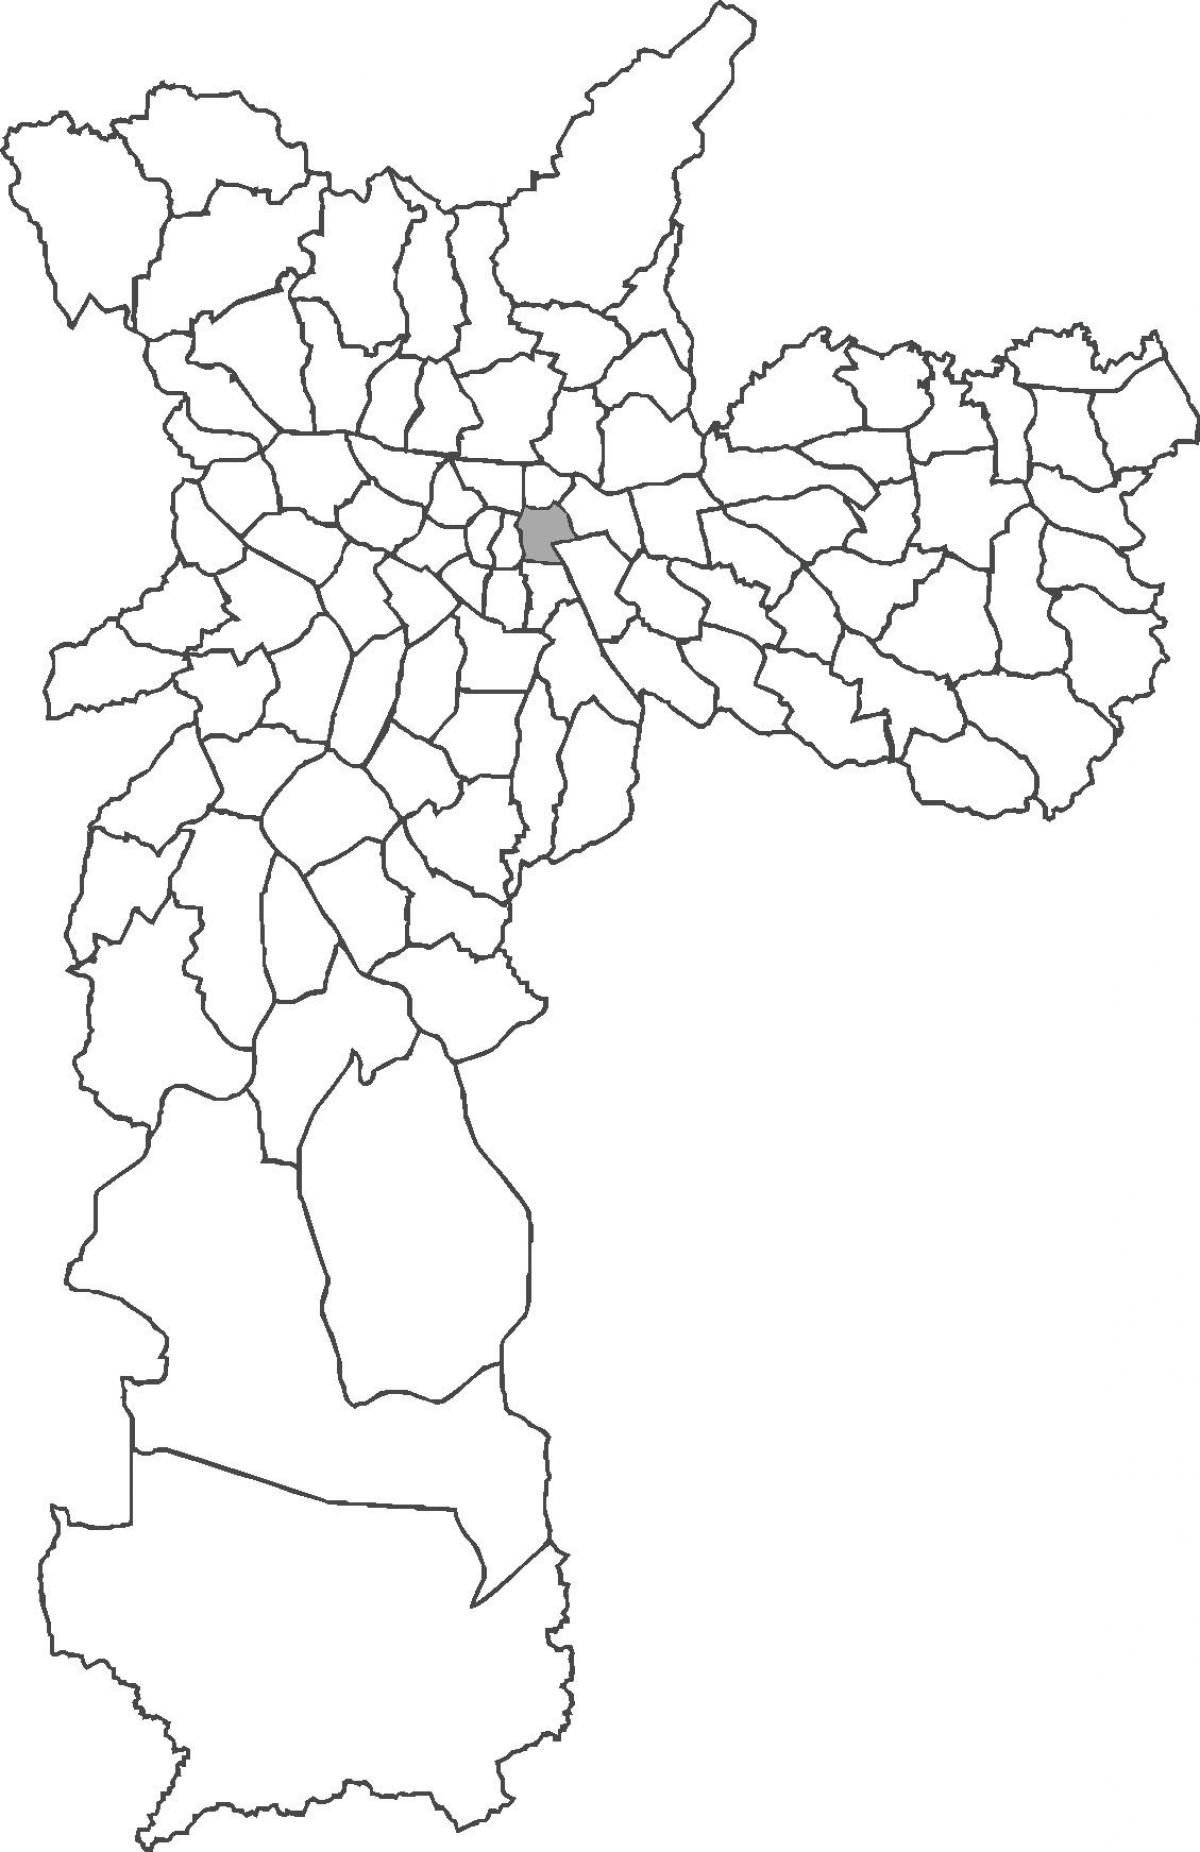 মানচিত্র Brás জেলা